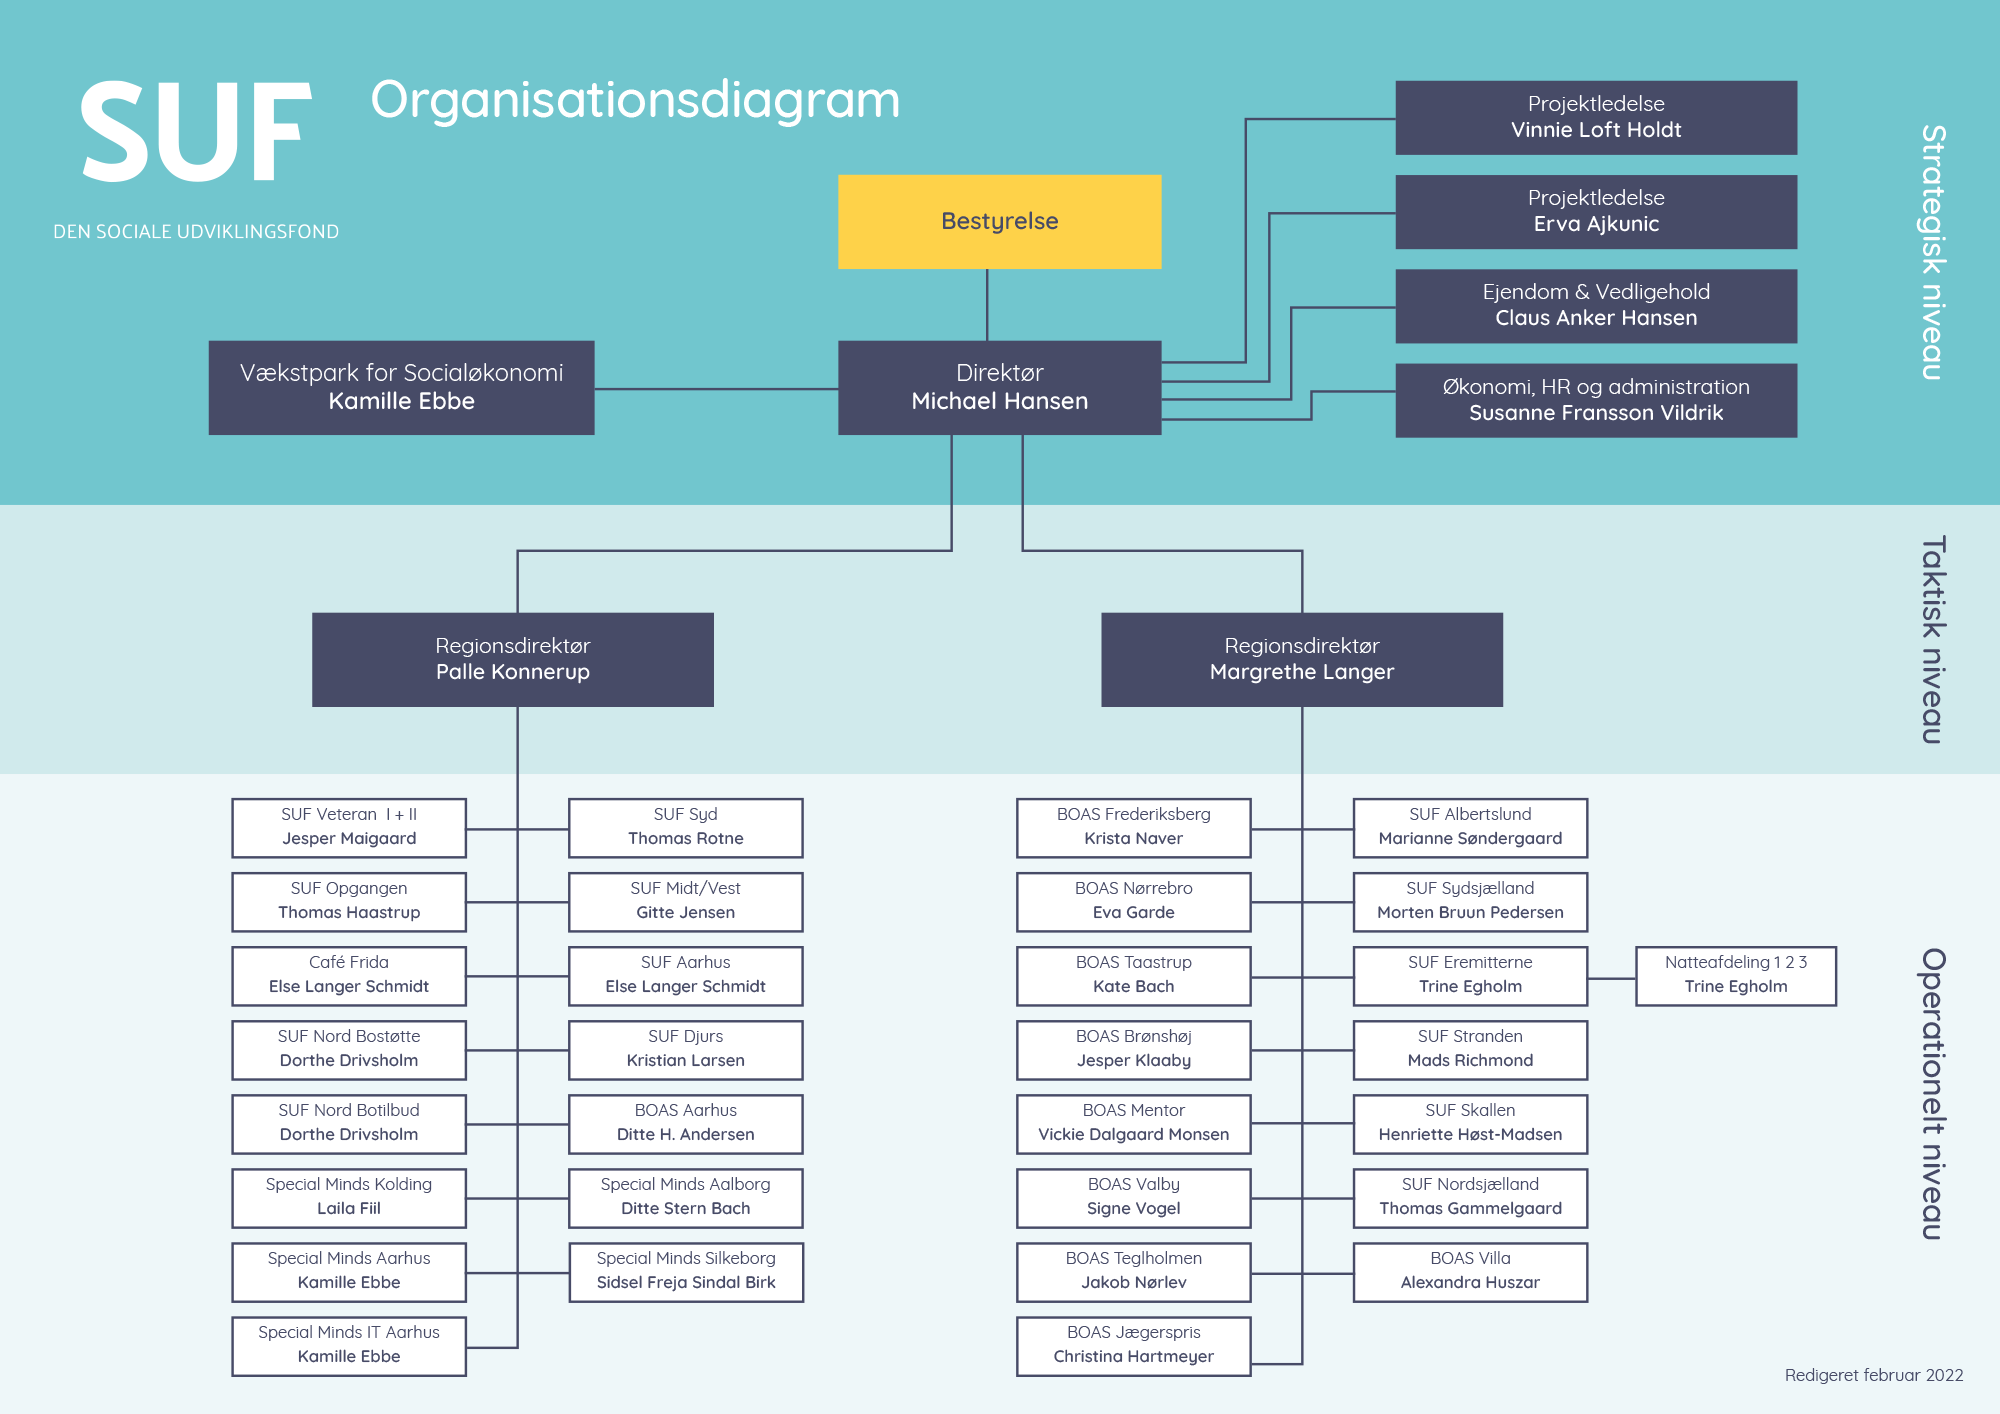 Organisationsdiagram for SUF